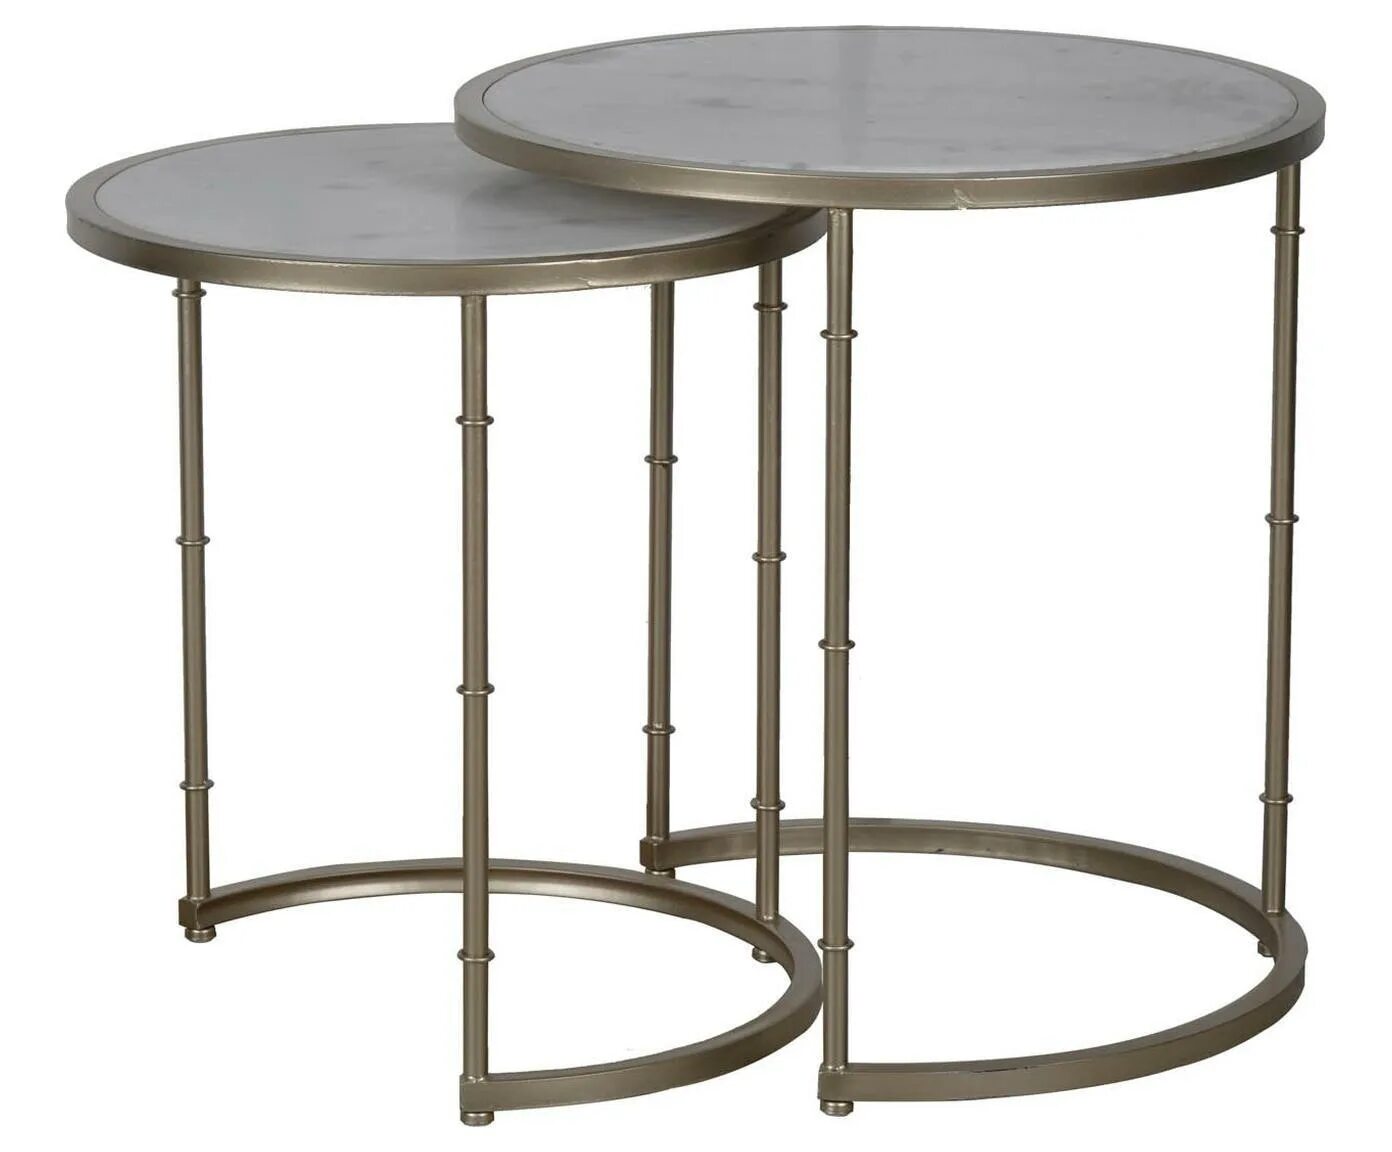 Стол круглый 1 м диаметр. Glasar столик. Столик кофейный Гласар. Комплект журнальных столиков Glasar. Столик круглый.